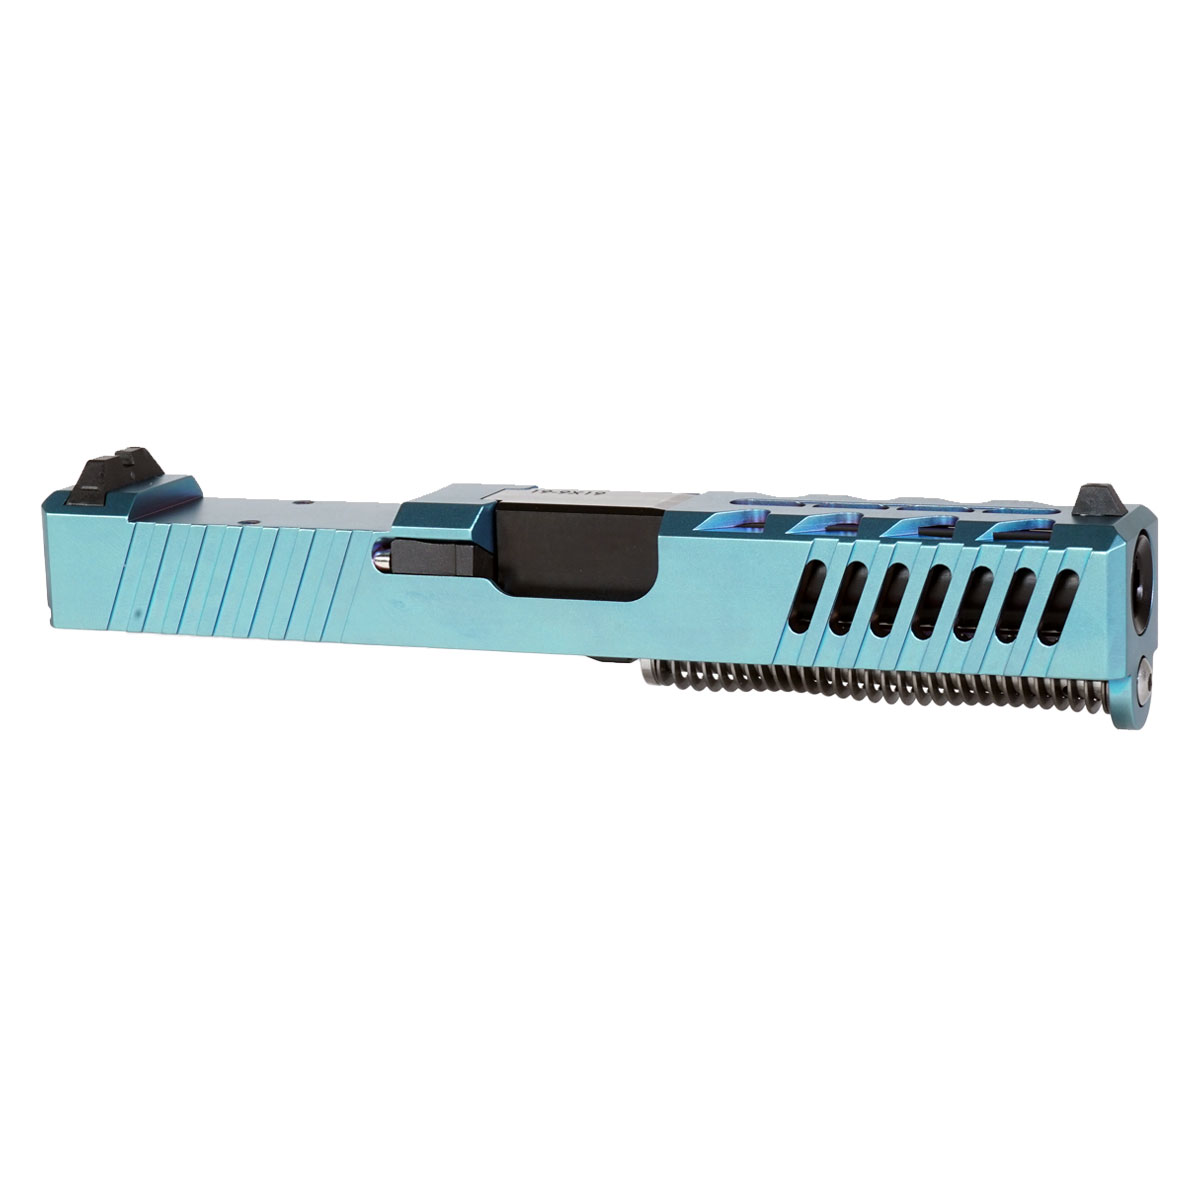 OTD 'Ripplemaker' 9mm Complete Slide Kit - Glock 19 Gen 1-3 Compatible